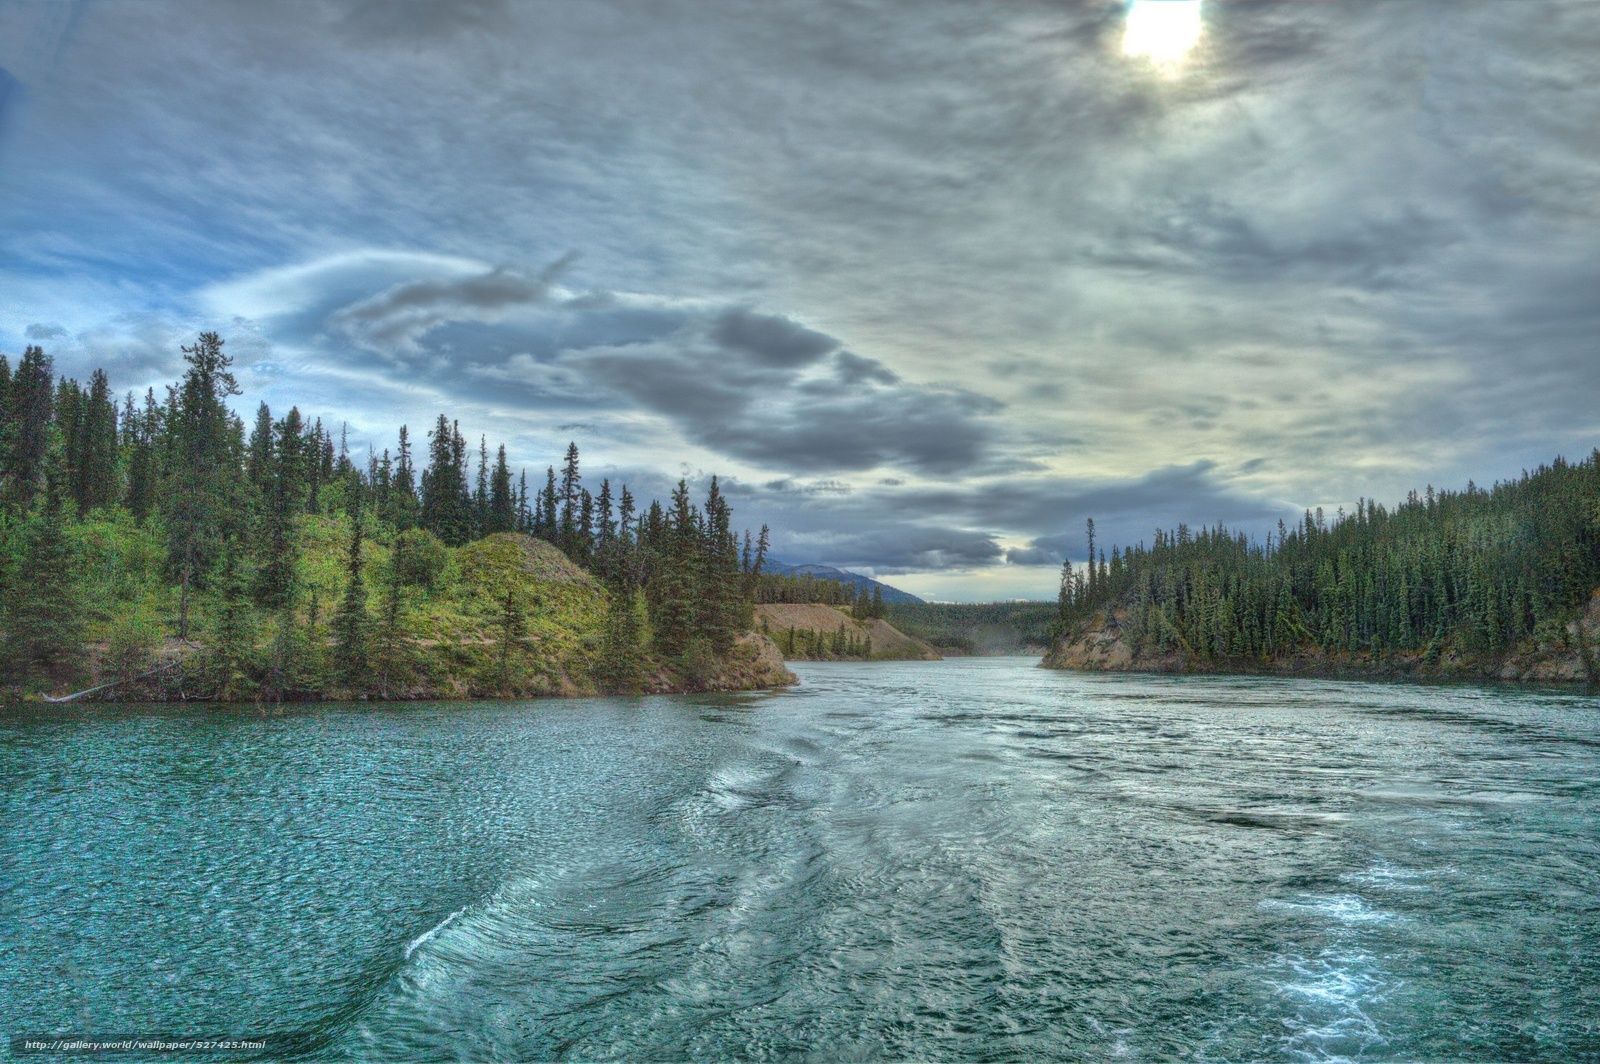 Hình nền Yukon: Khám phá vẻ đẹp hoang sơ của Yukon thông qua hình nền tuyệt đẹp. Với những hình ảnh về đất nước của Bắc Canada, bạn sẽ cảm nhận được sự yên bình, tĩnh lặng và ngập tràn năng lượng từ những cảnh quan đầy mê hoặc này.